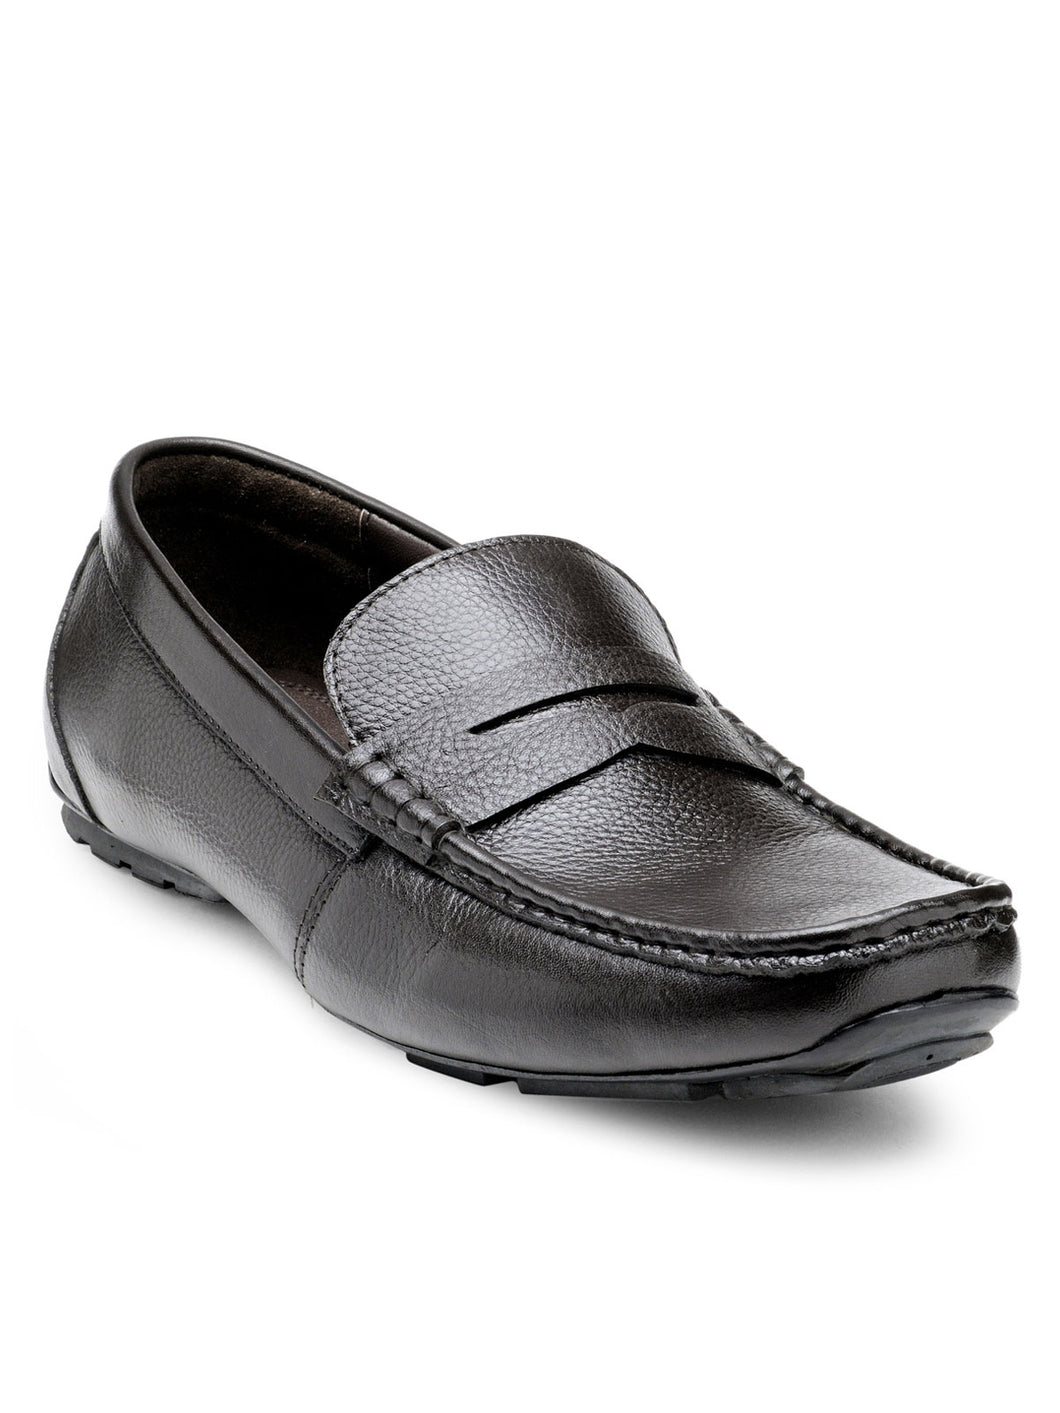 Teakwood Leather Men's Brown Slip-ons Shoes